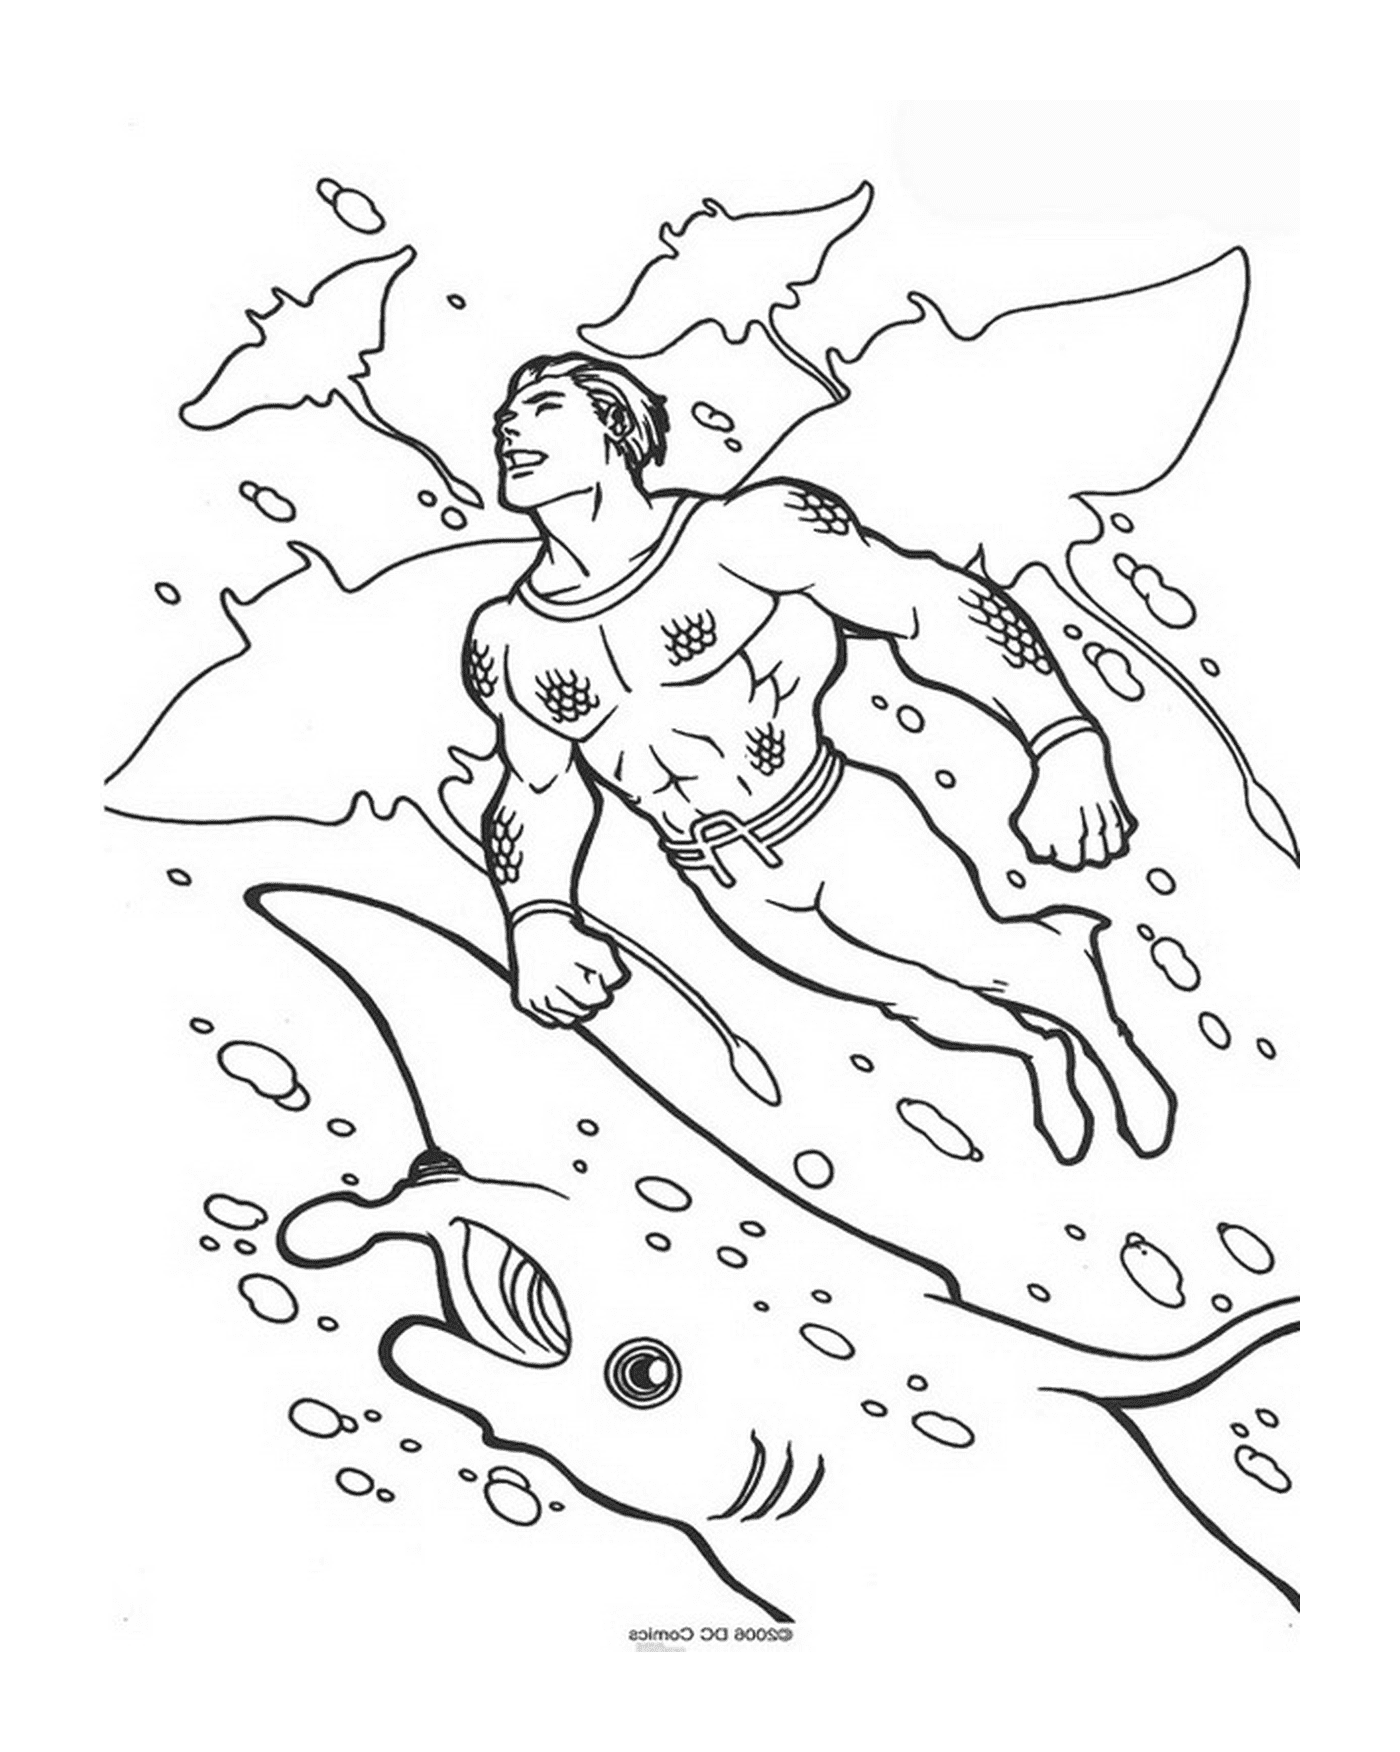  Um homem nadando no oceano 